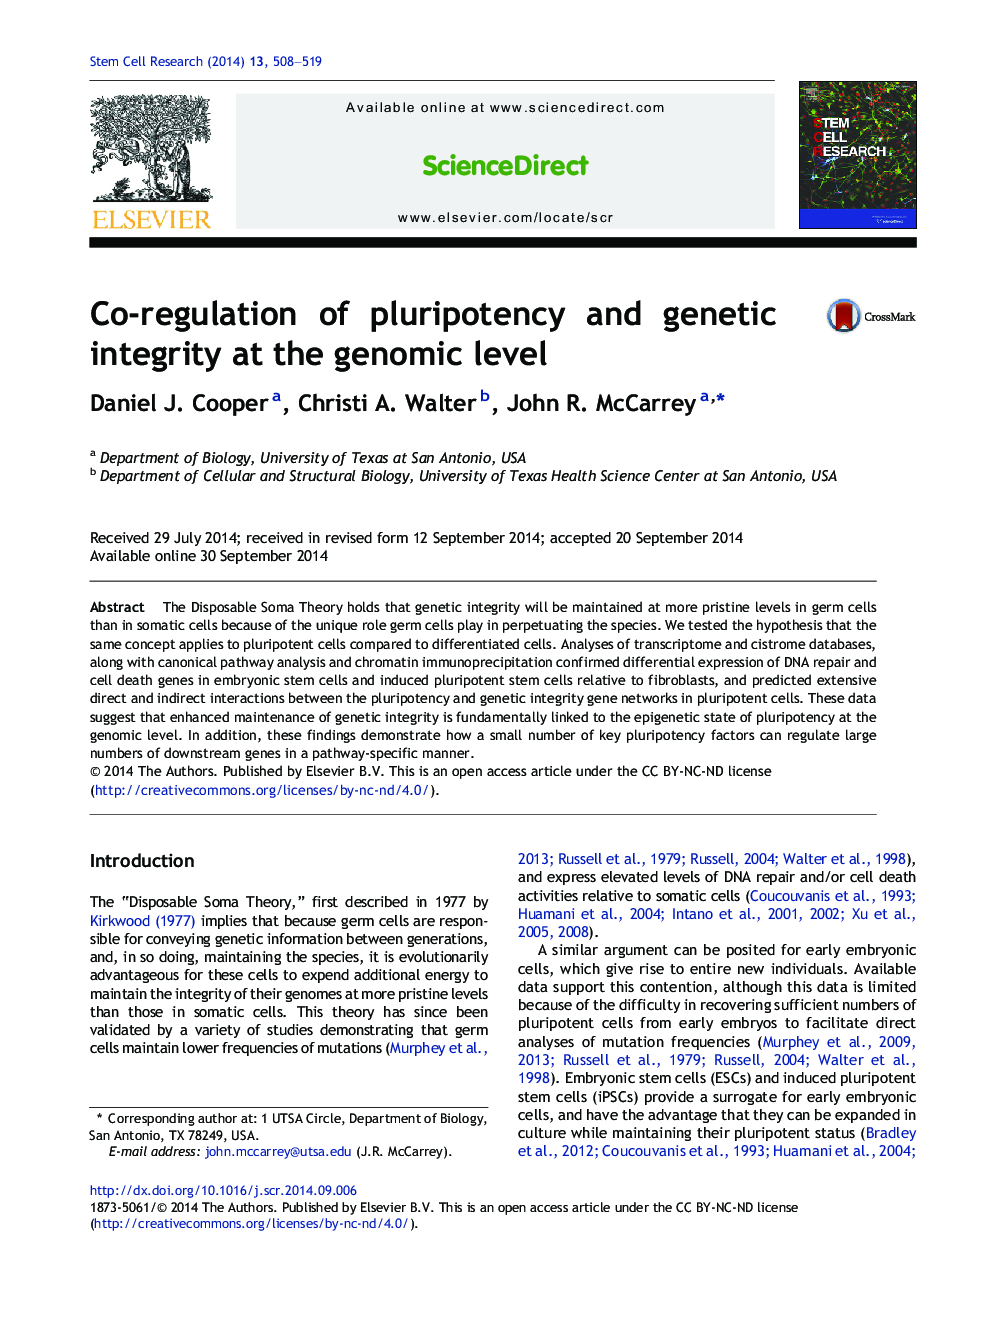 تنظیم مقابله با انعطاف پذیری و یکپارچگی ژنتیکی در سطح ژنوم 